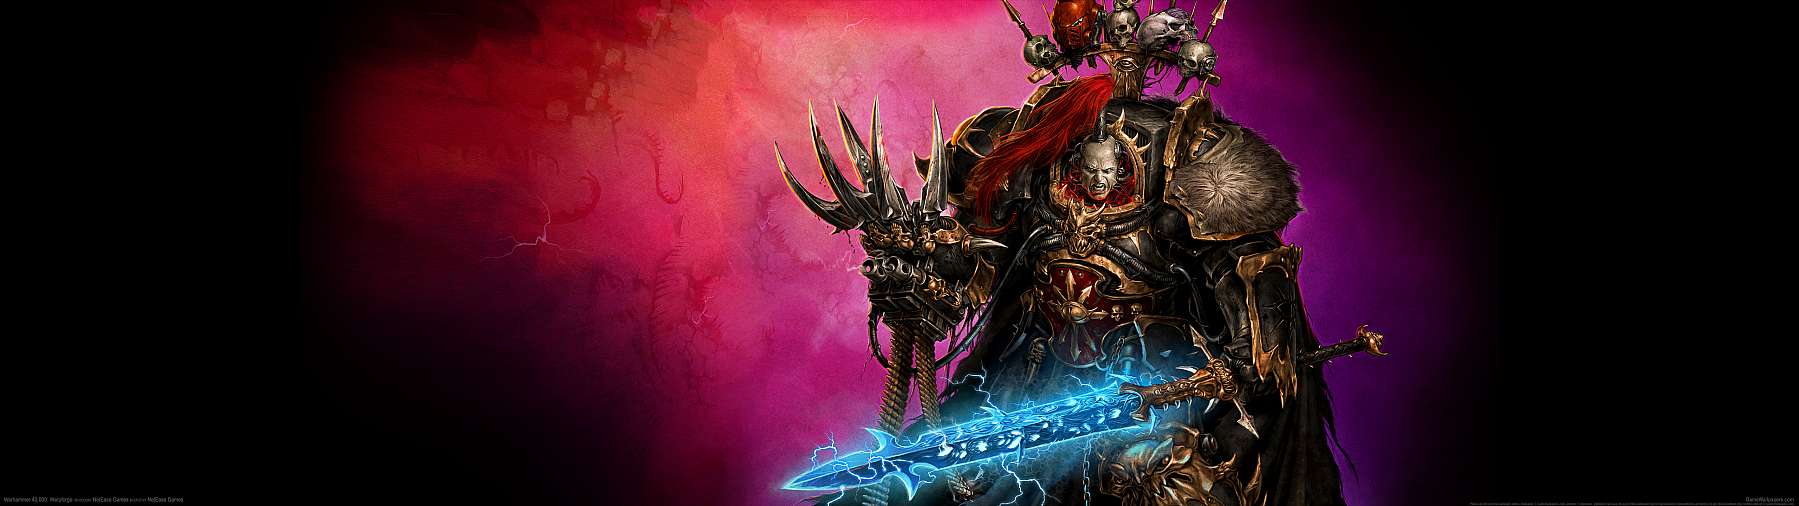 Warhammer 40,000: Warpforge superwide achtergrond 02